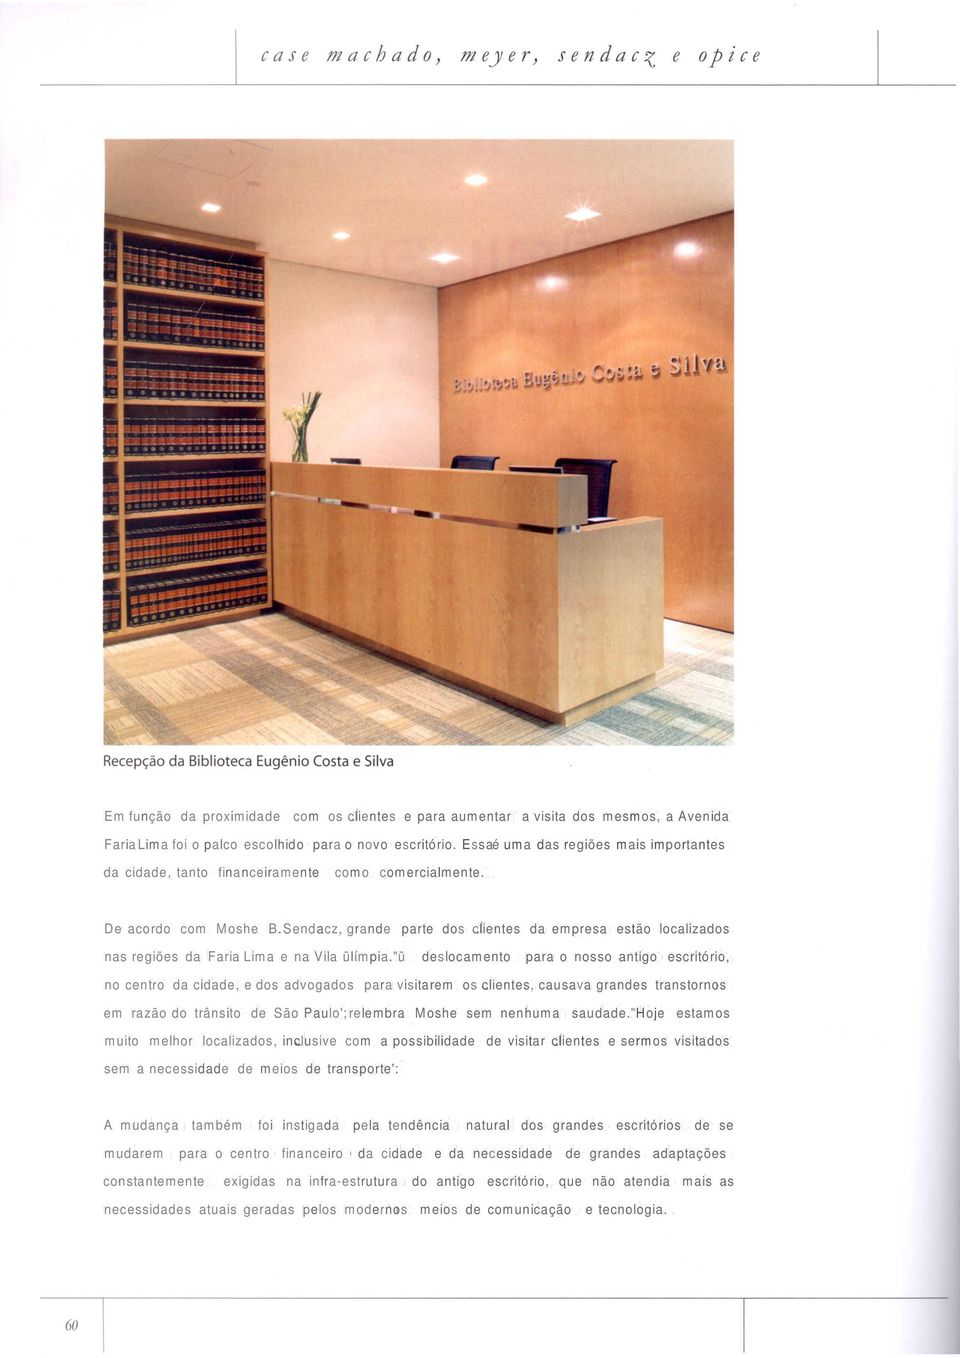 Sendacz, grande parte dos clientes da empresa estão localizados nas regiões da Faria Lima e na Vila ülímpia.